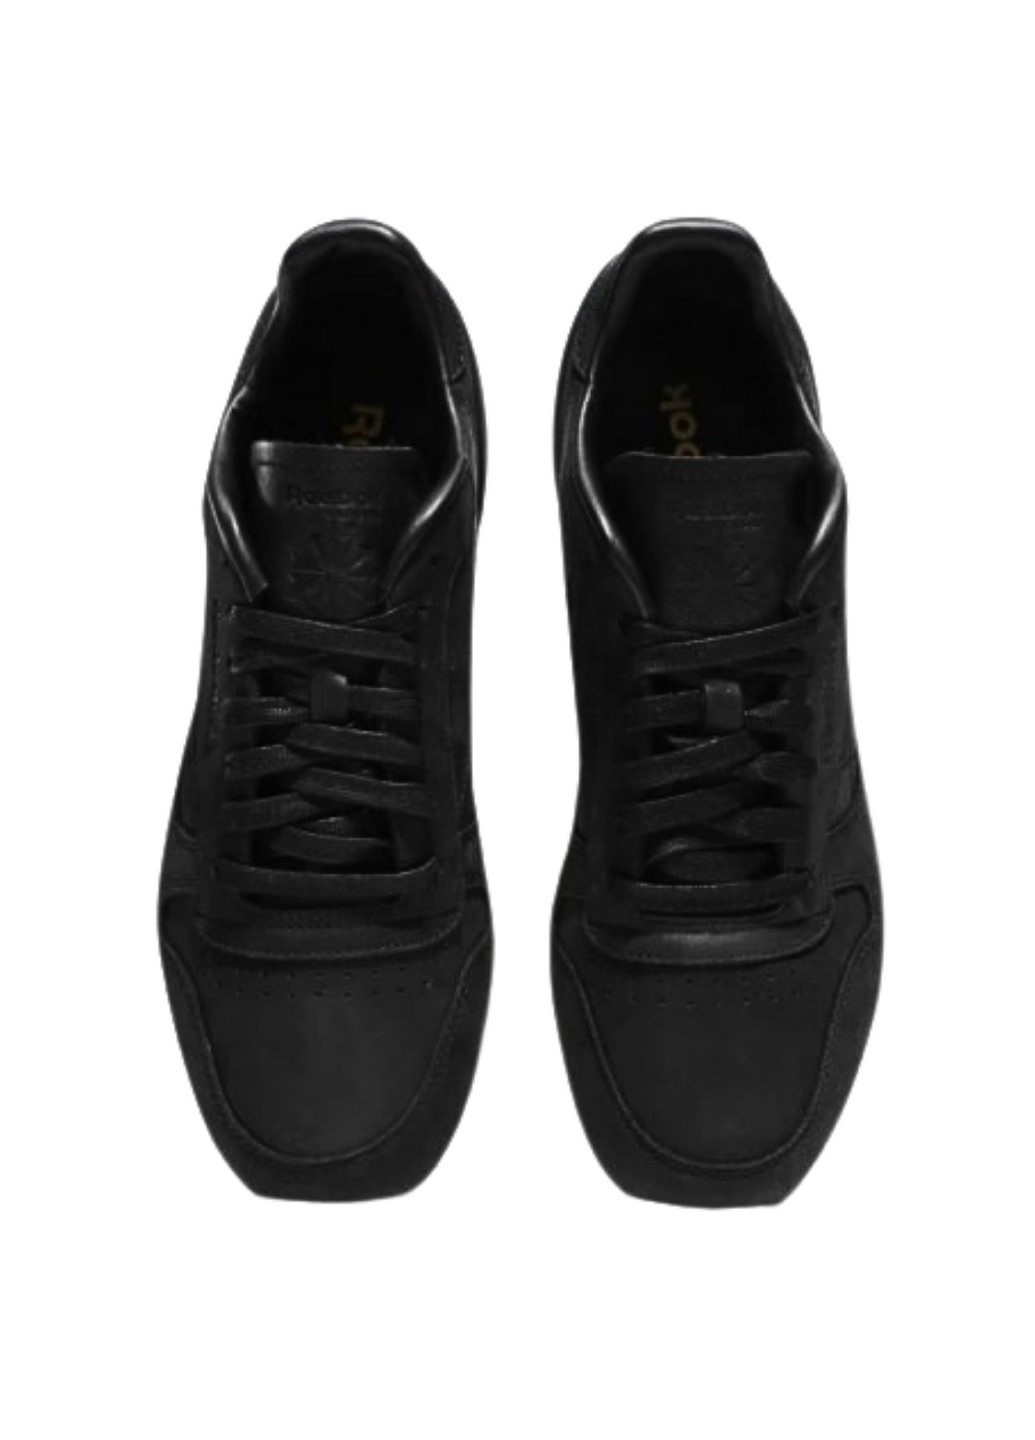 Черные демисезонные мужские кроссовки classic leather lux pw v68685 Reebok